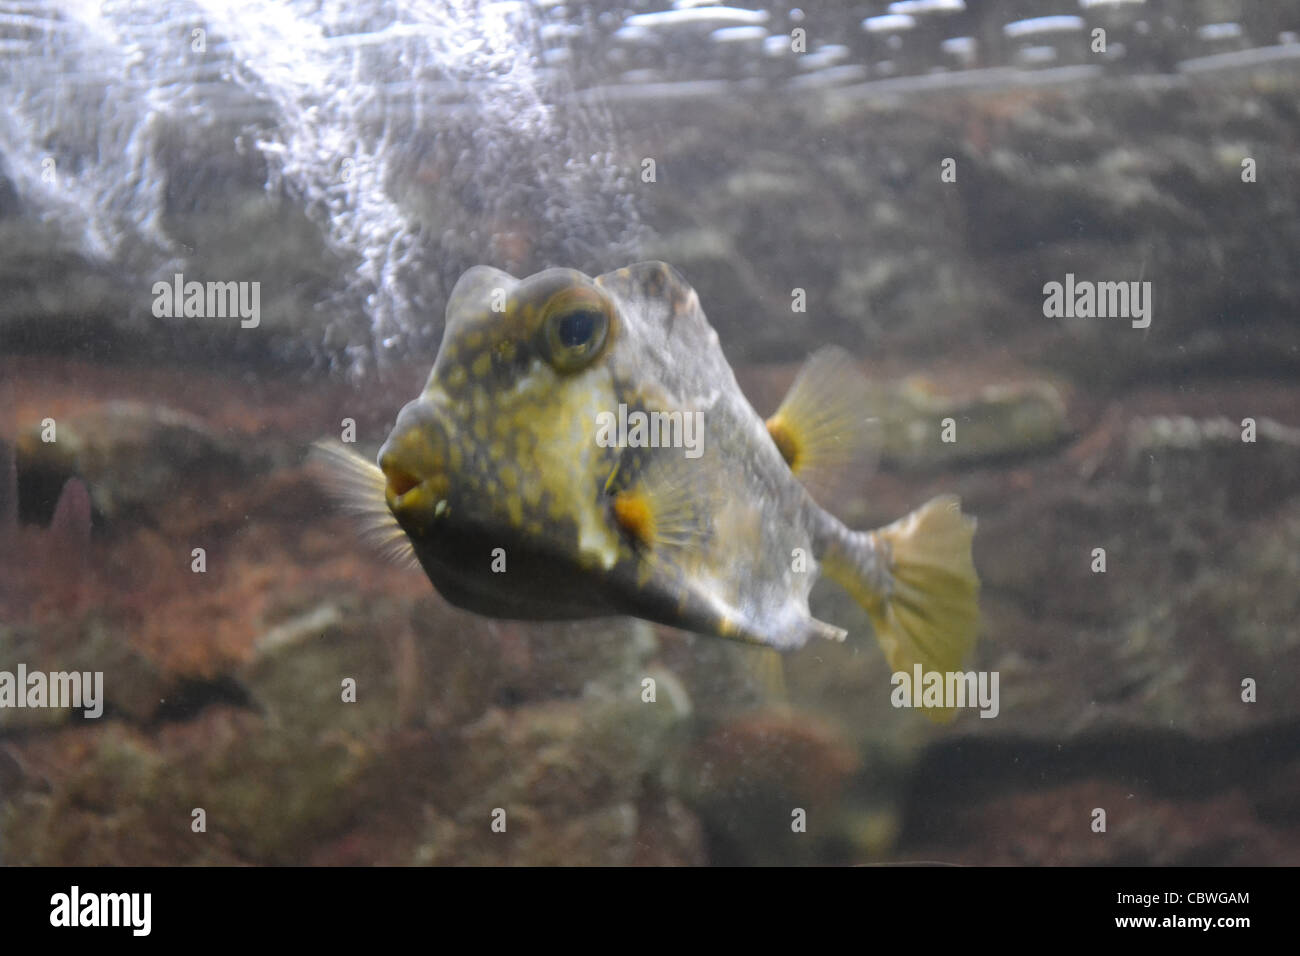 fish in an aquarium Stock Photo